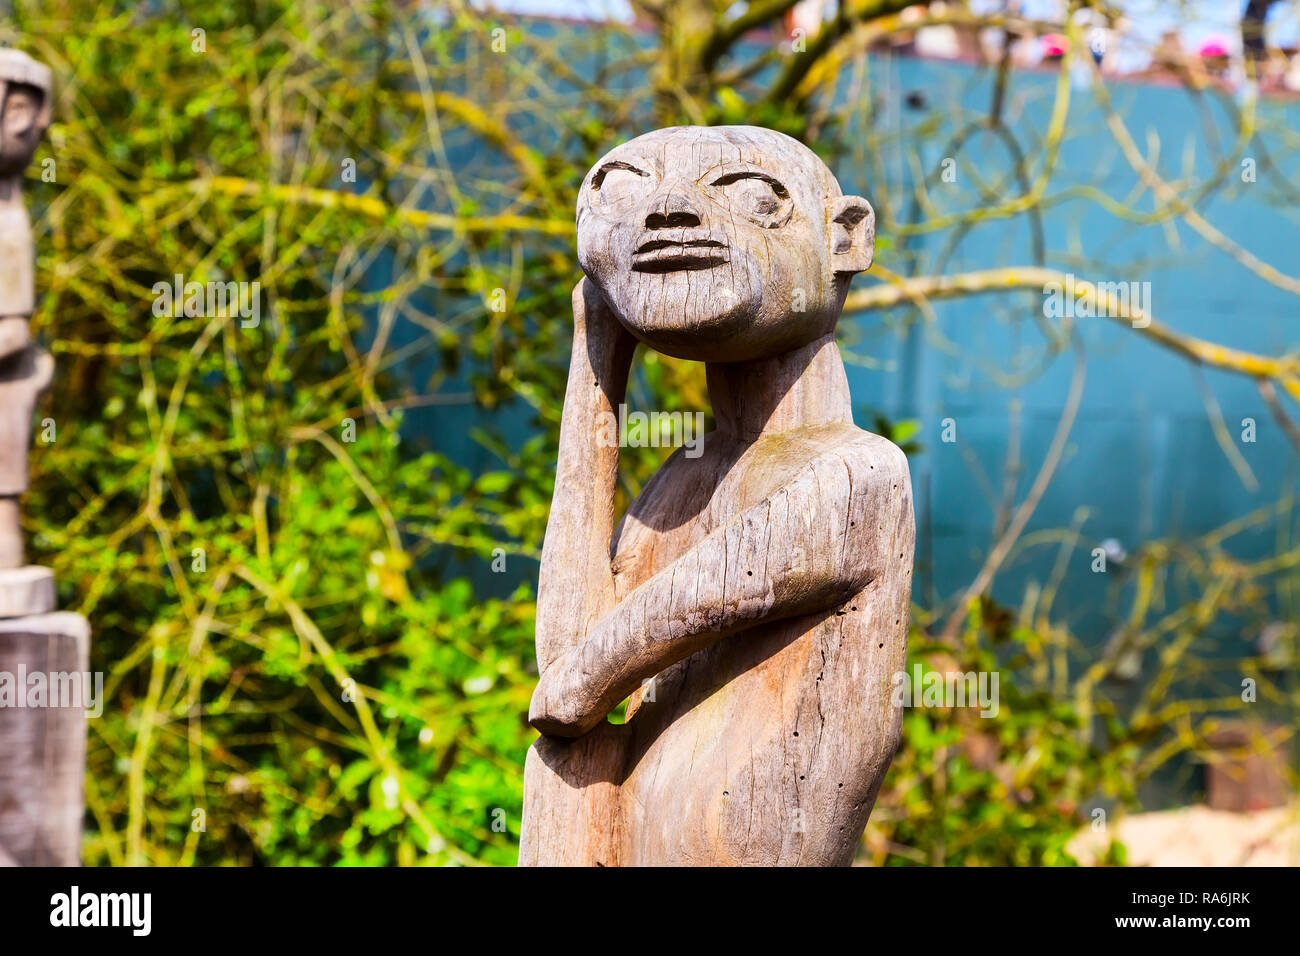 Asian antica statua in legno di idolo in Pairi Daiza, Belgio Foto Stock